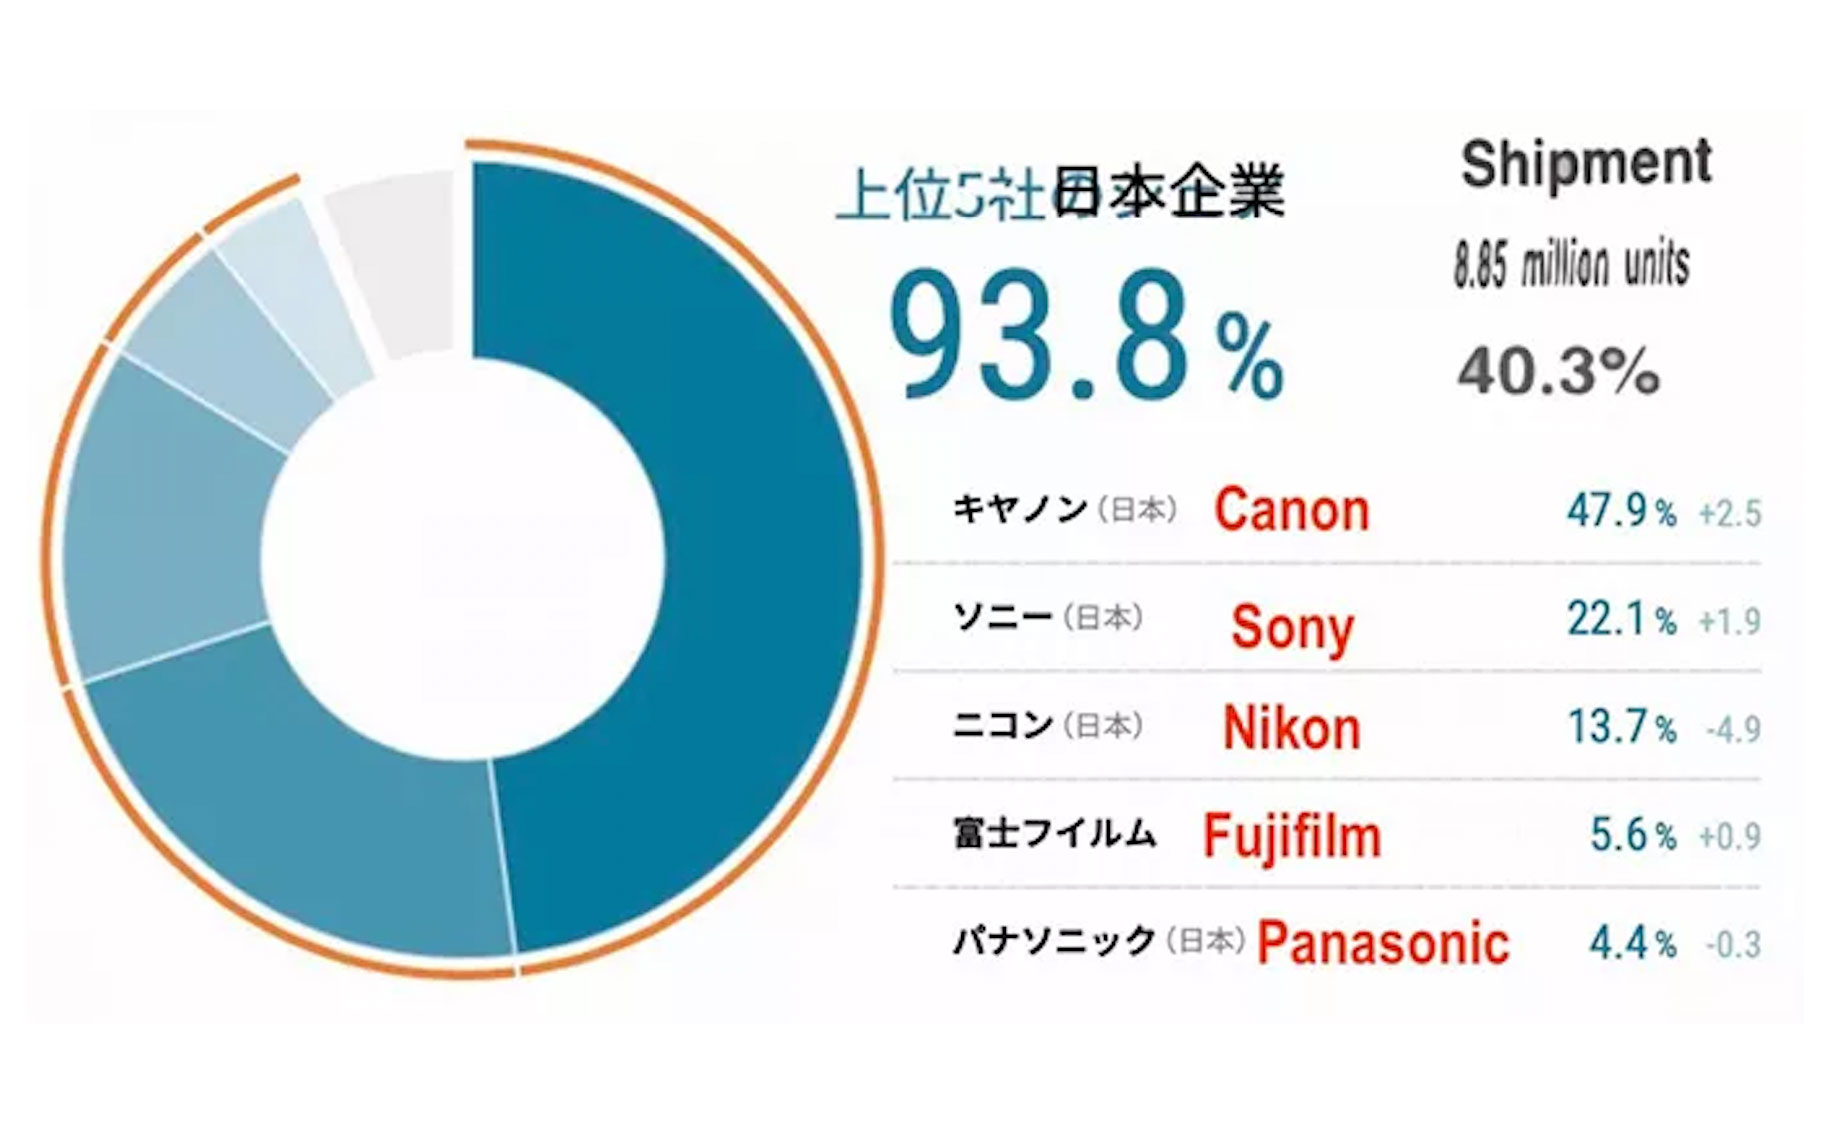 Thị phần máy ảnh 2020: Canon chiếm 48%, Sony 22%, Nikon giảm xuống còn 13.7%